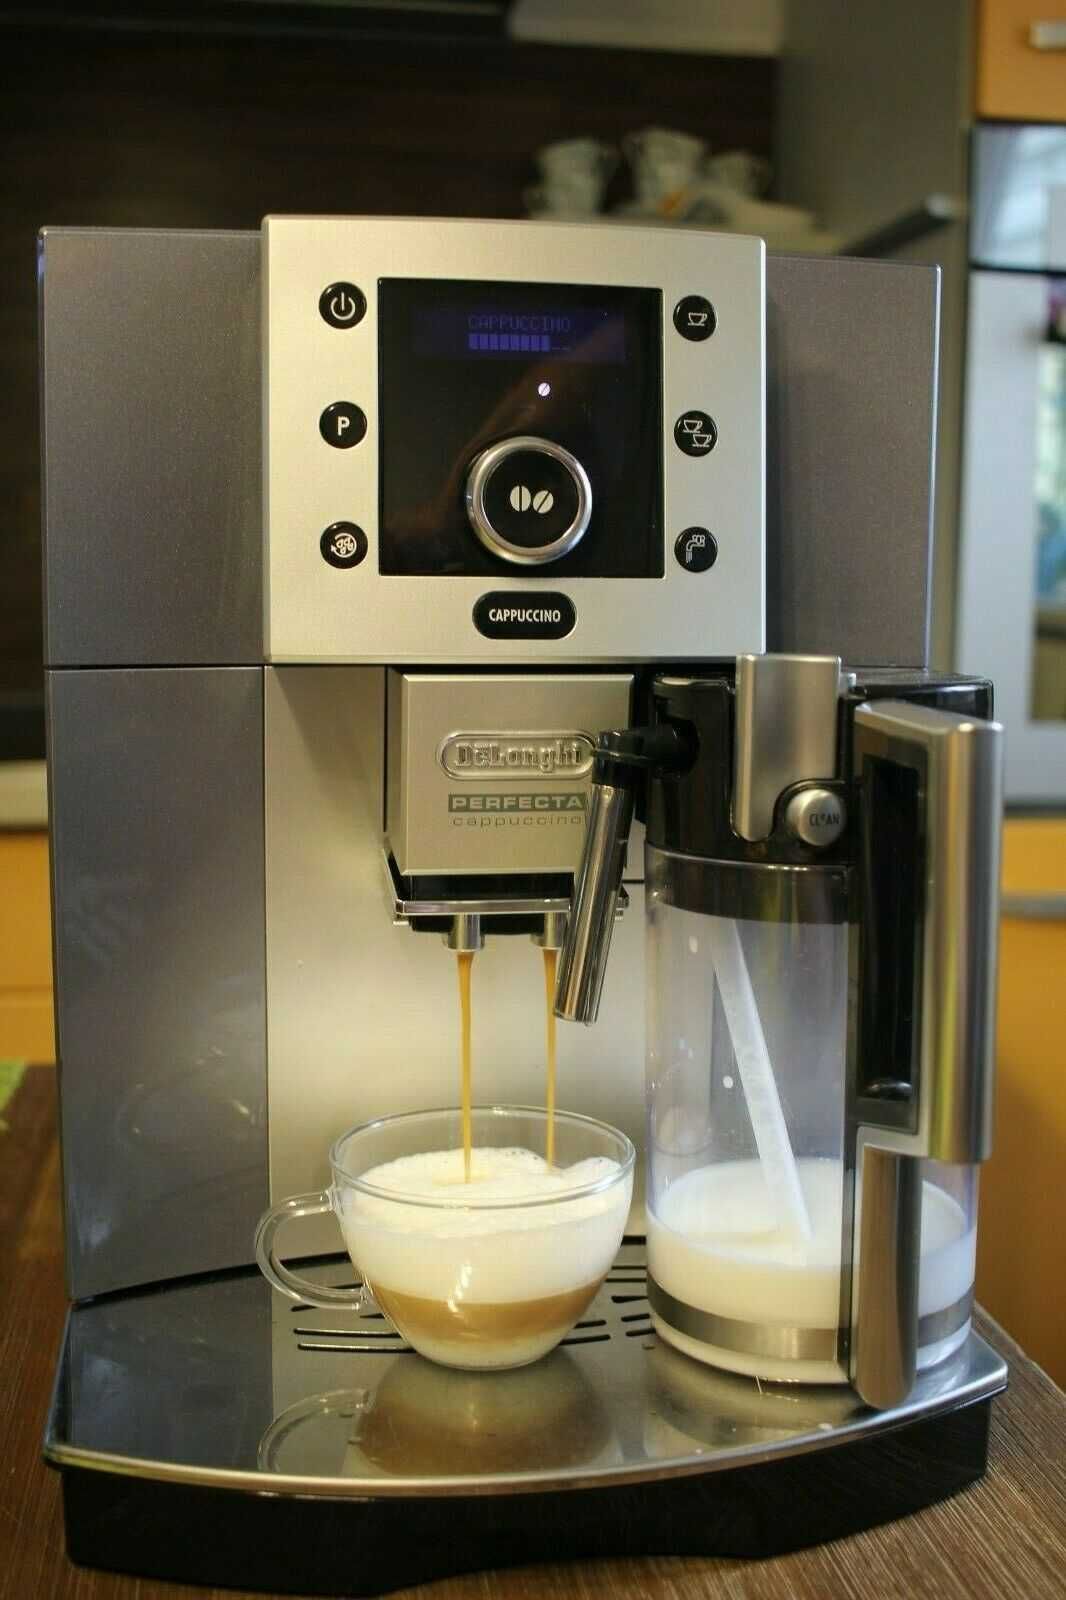 Кафе машини DeLonghi ESAM5500 Perfecta